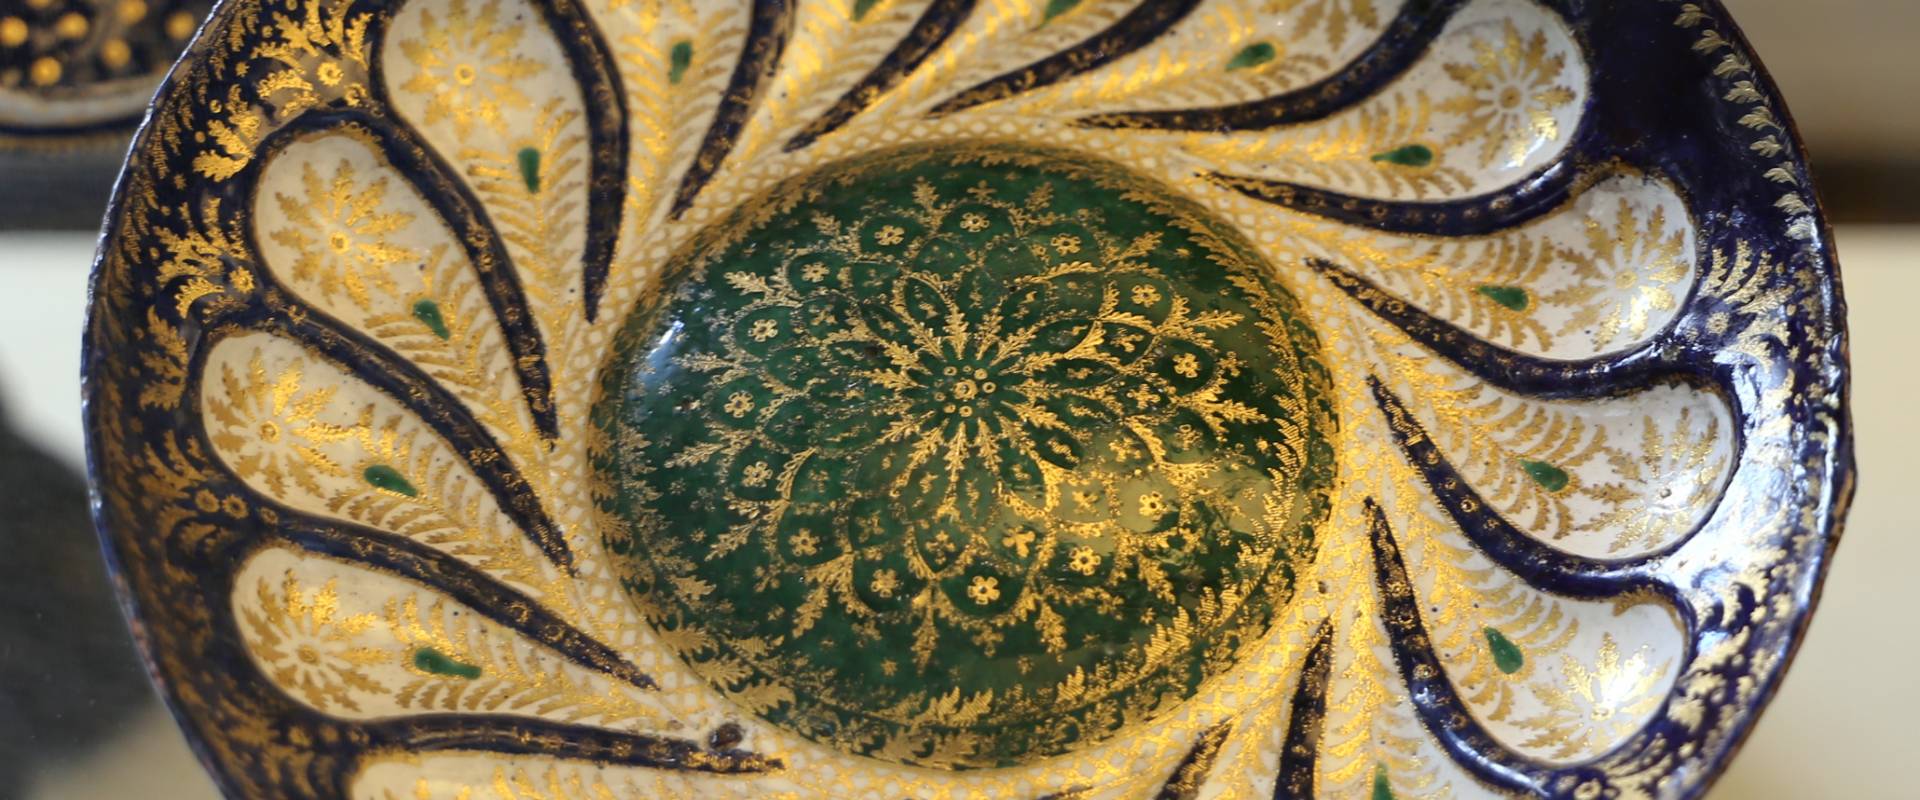 Manifattura veneziana, piatto in rame smaltato e dorato, xv secolo photo by Sailko